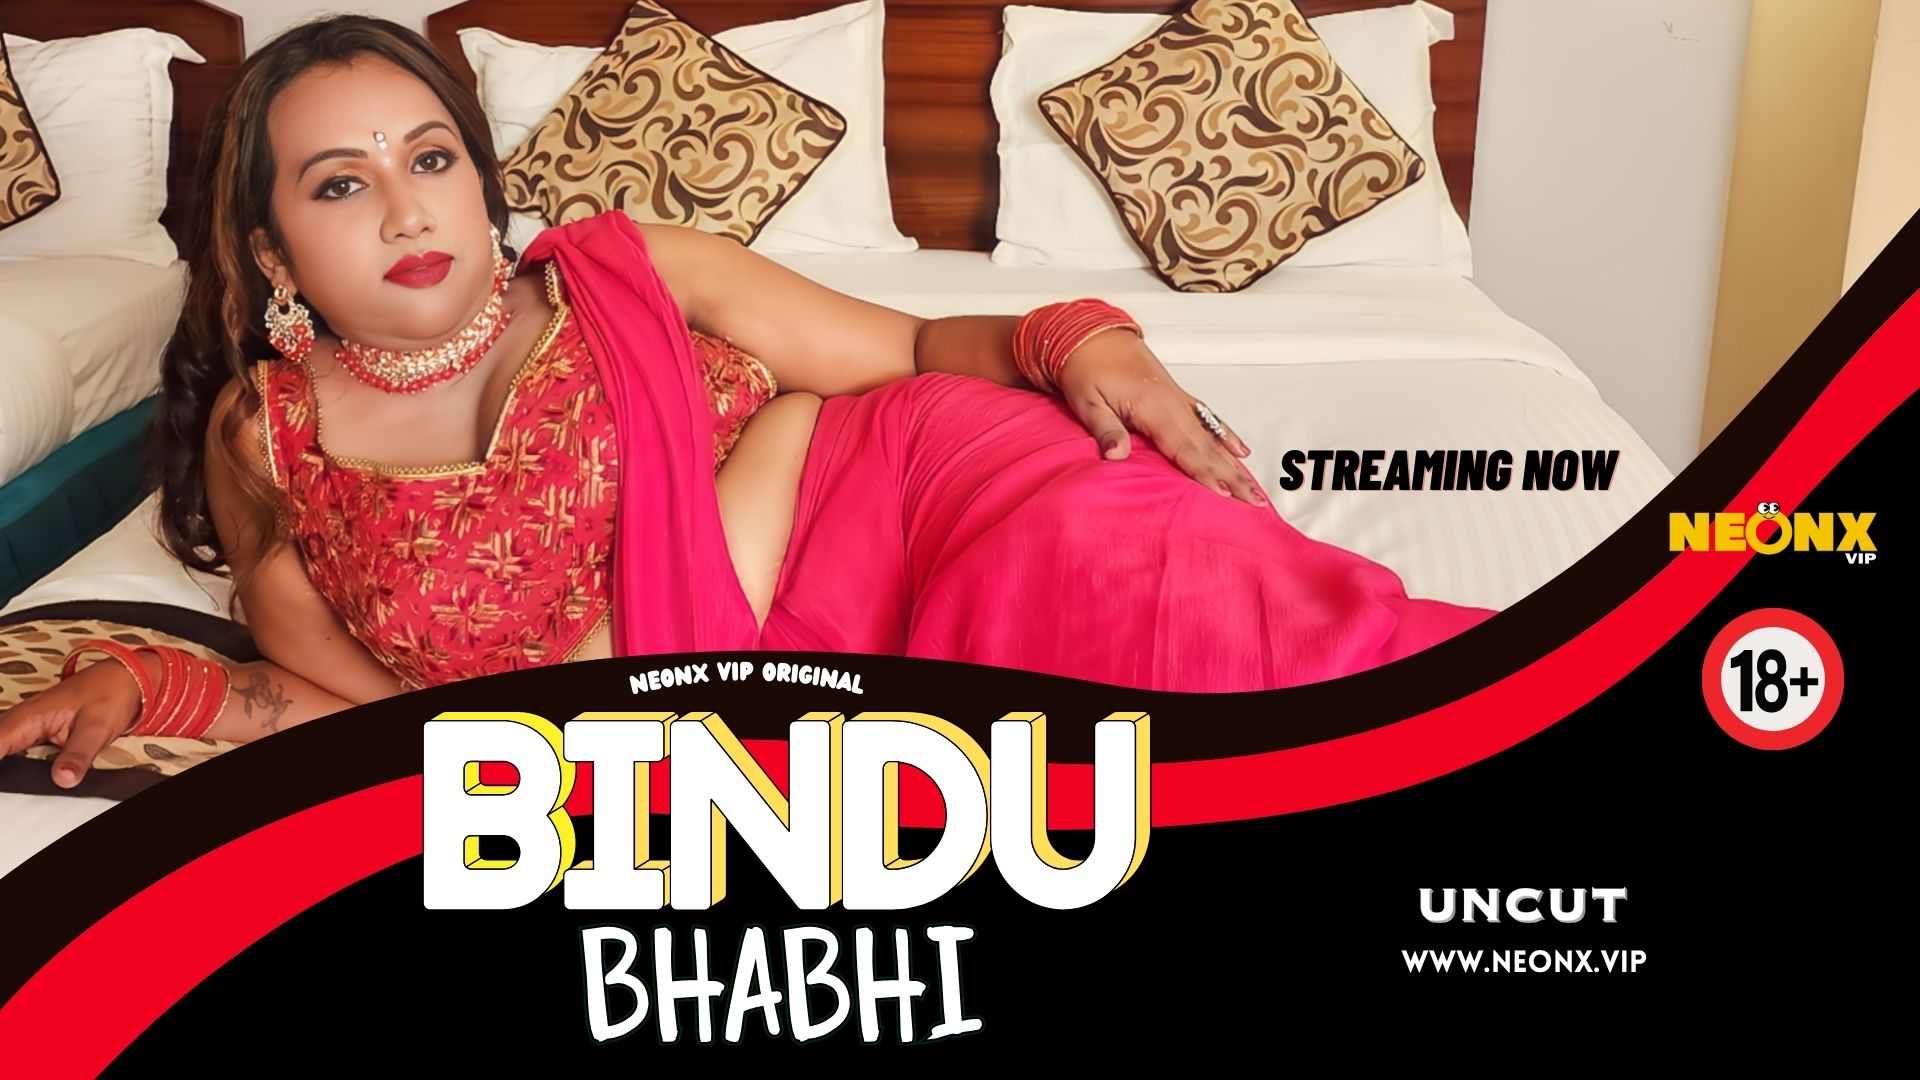 BINDU BHABHI